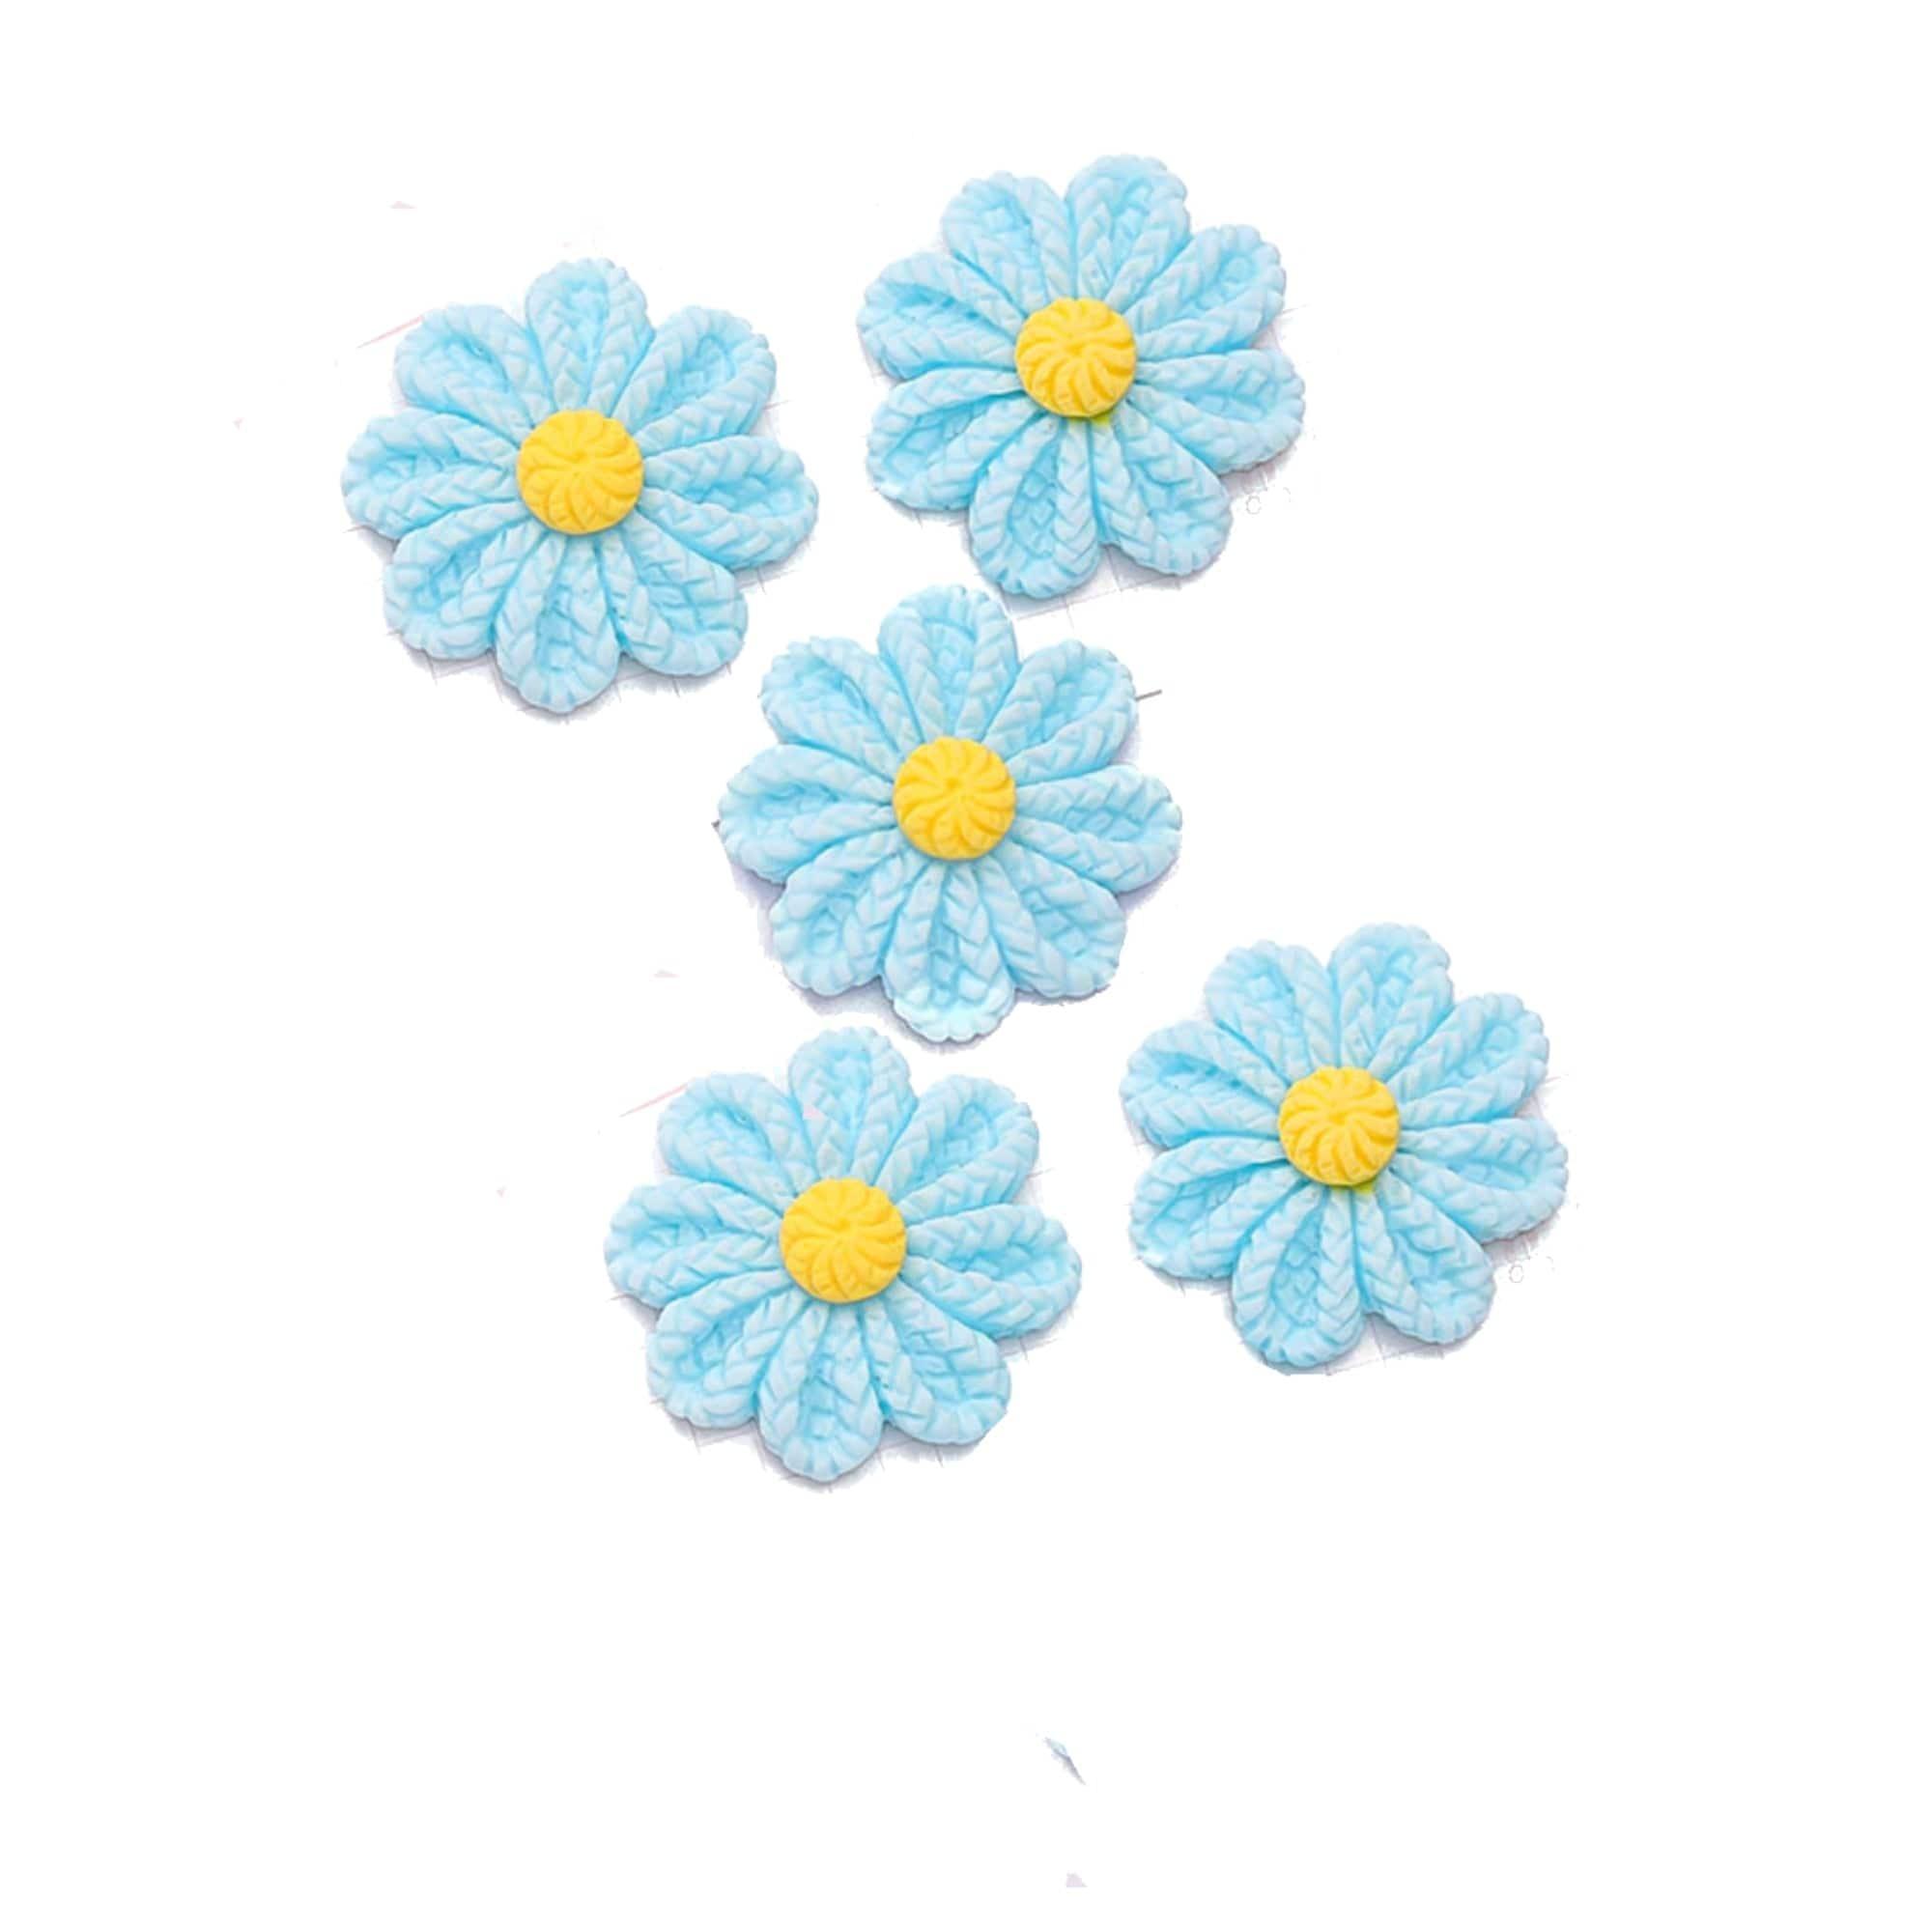 Flower Fun Collection Blue Flower Flatback Scrapbook Buttons by SSC Designs - Pkg. of 5